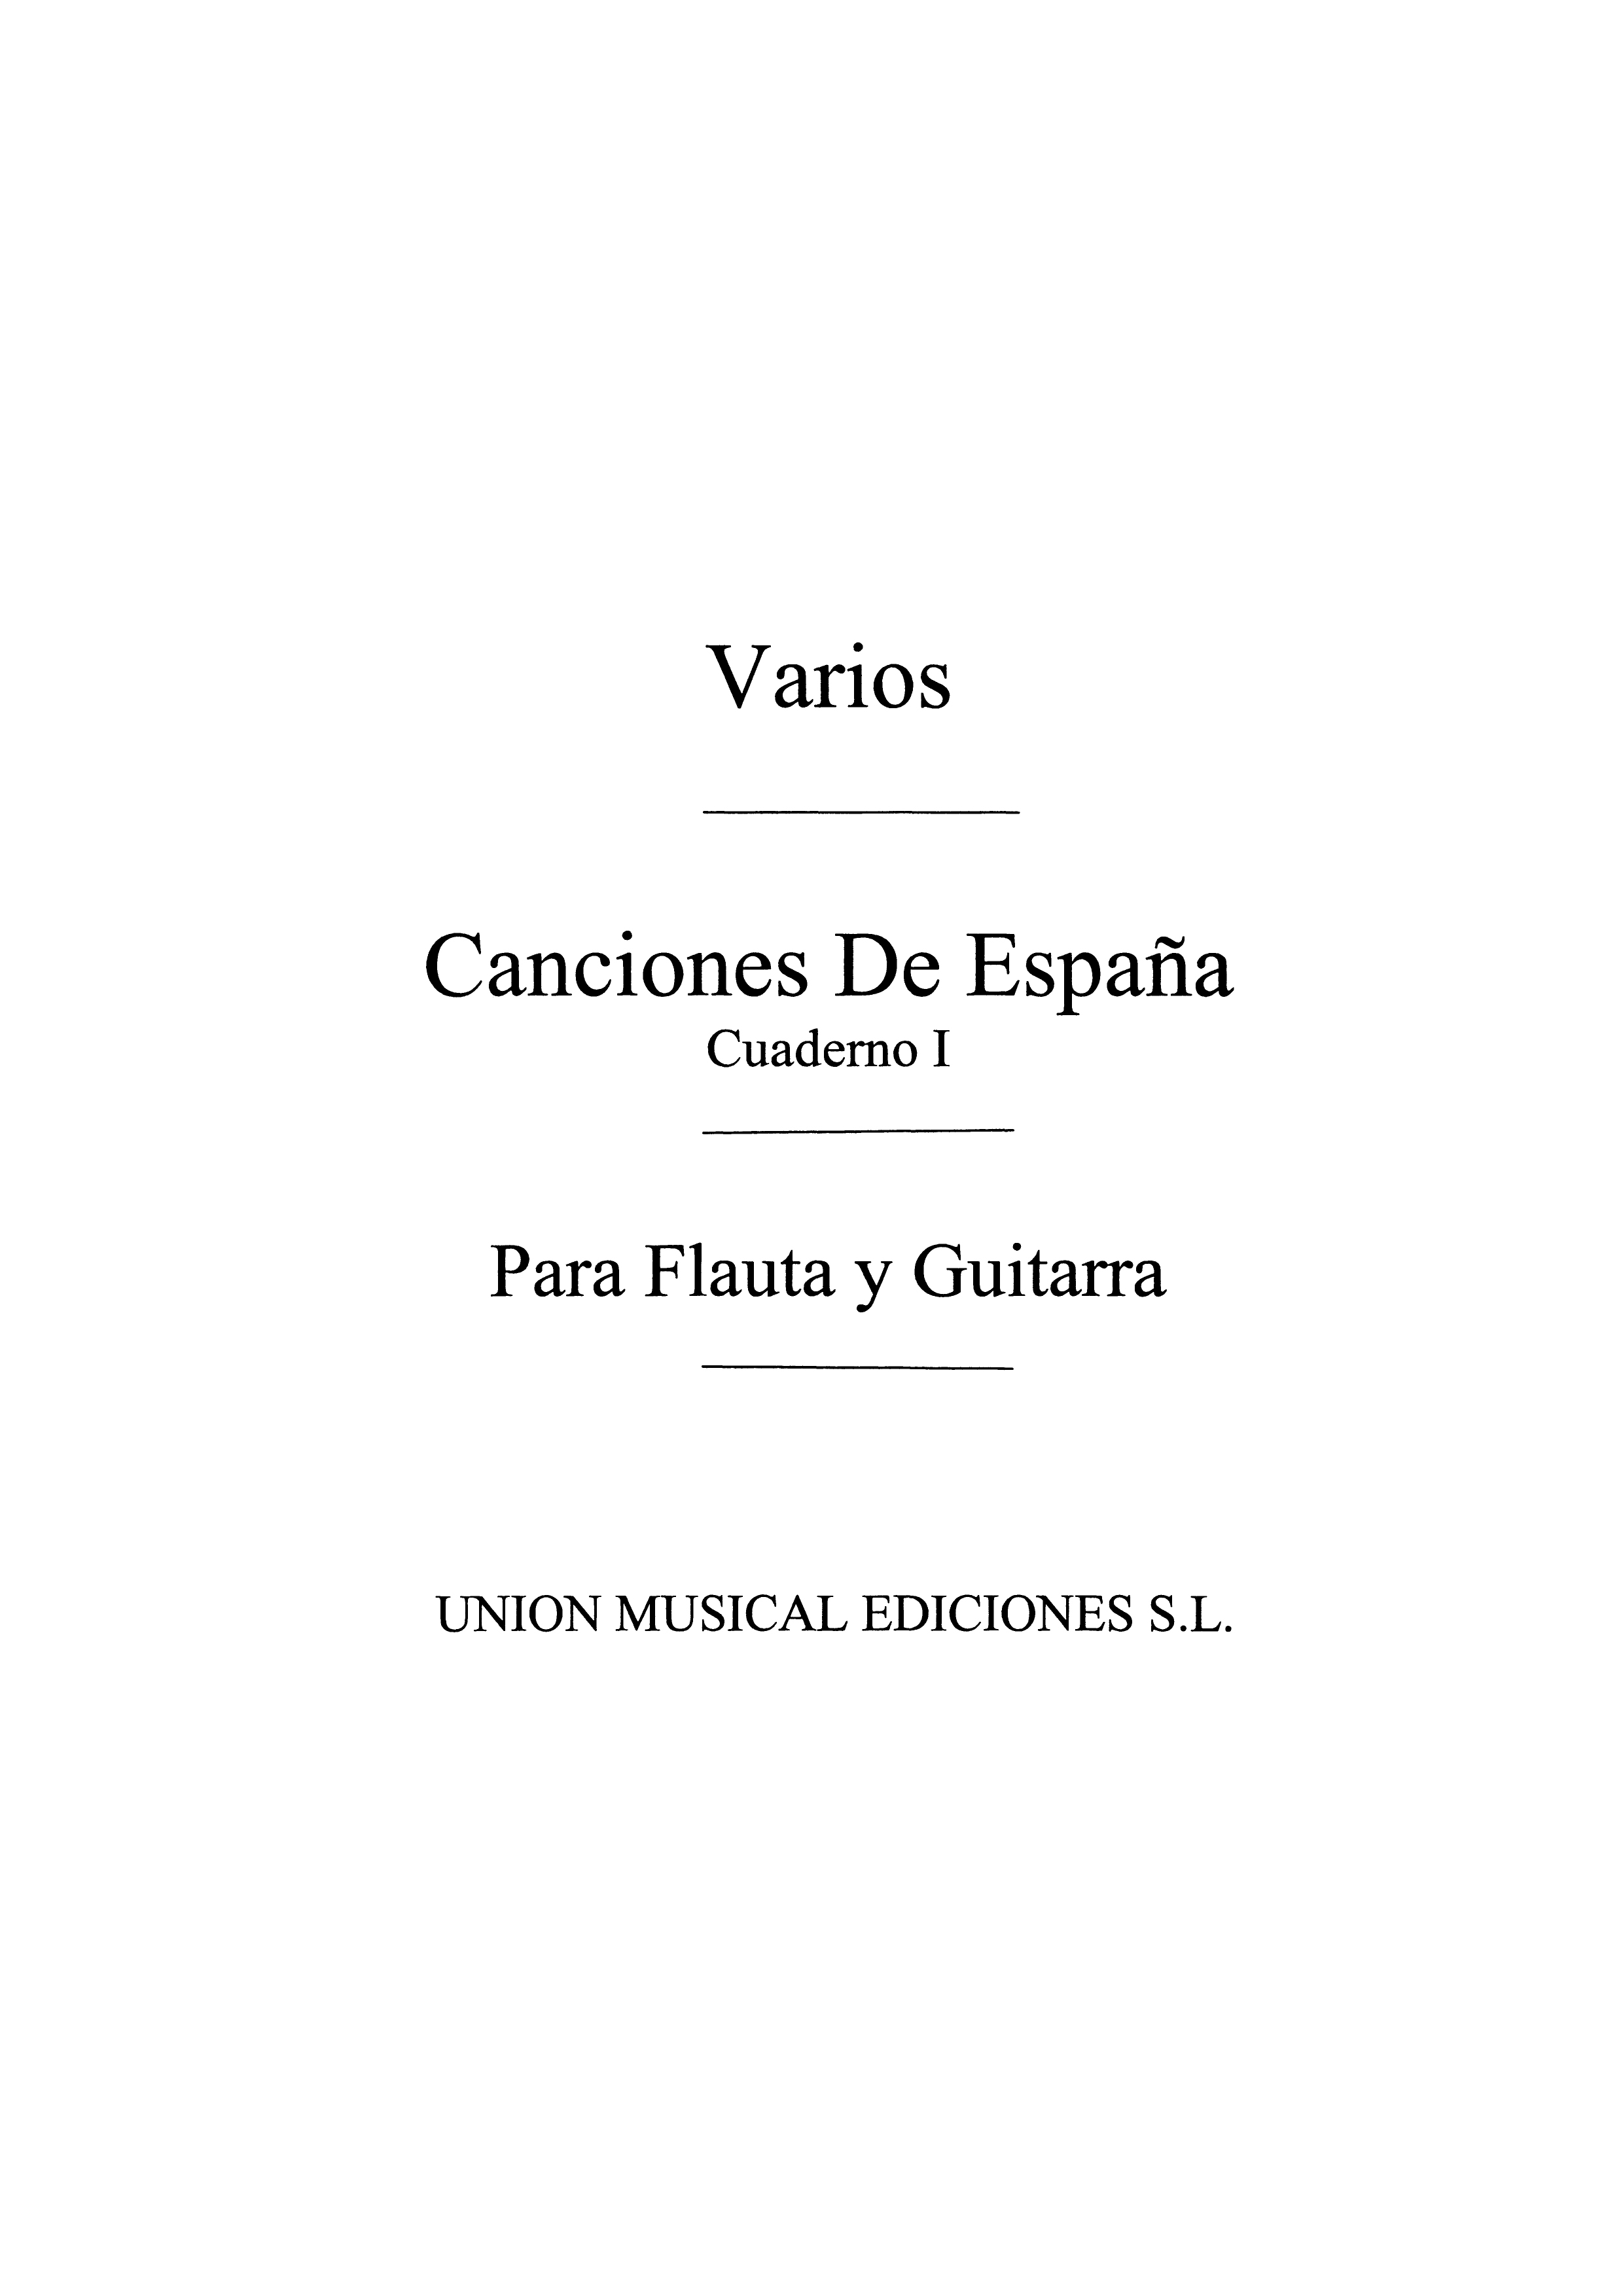 Varios: Canciones De Espana 4 Vols.: Flute & Guitar: Instrumental Work